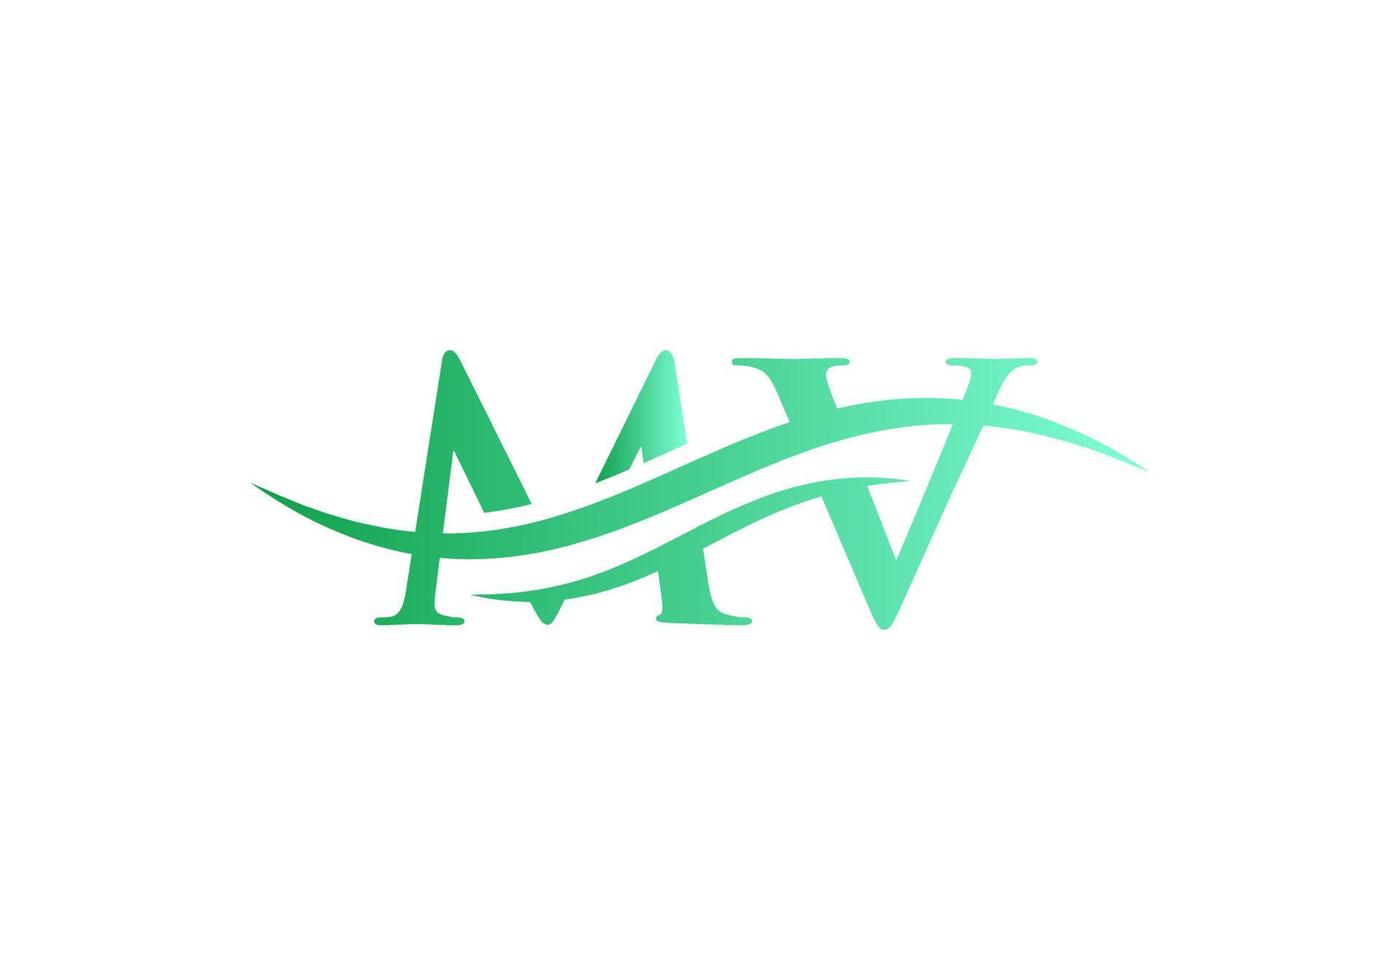 logo mv. monogramme lettre mv vecteur de conception de logo. création de logo lettre mv avec tendance moderne